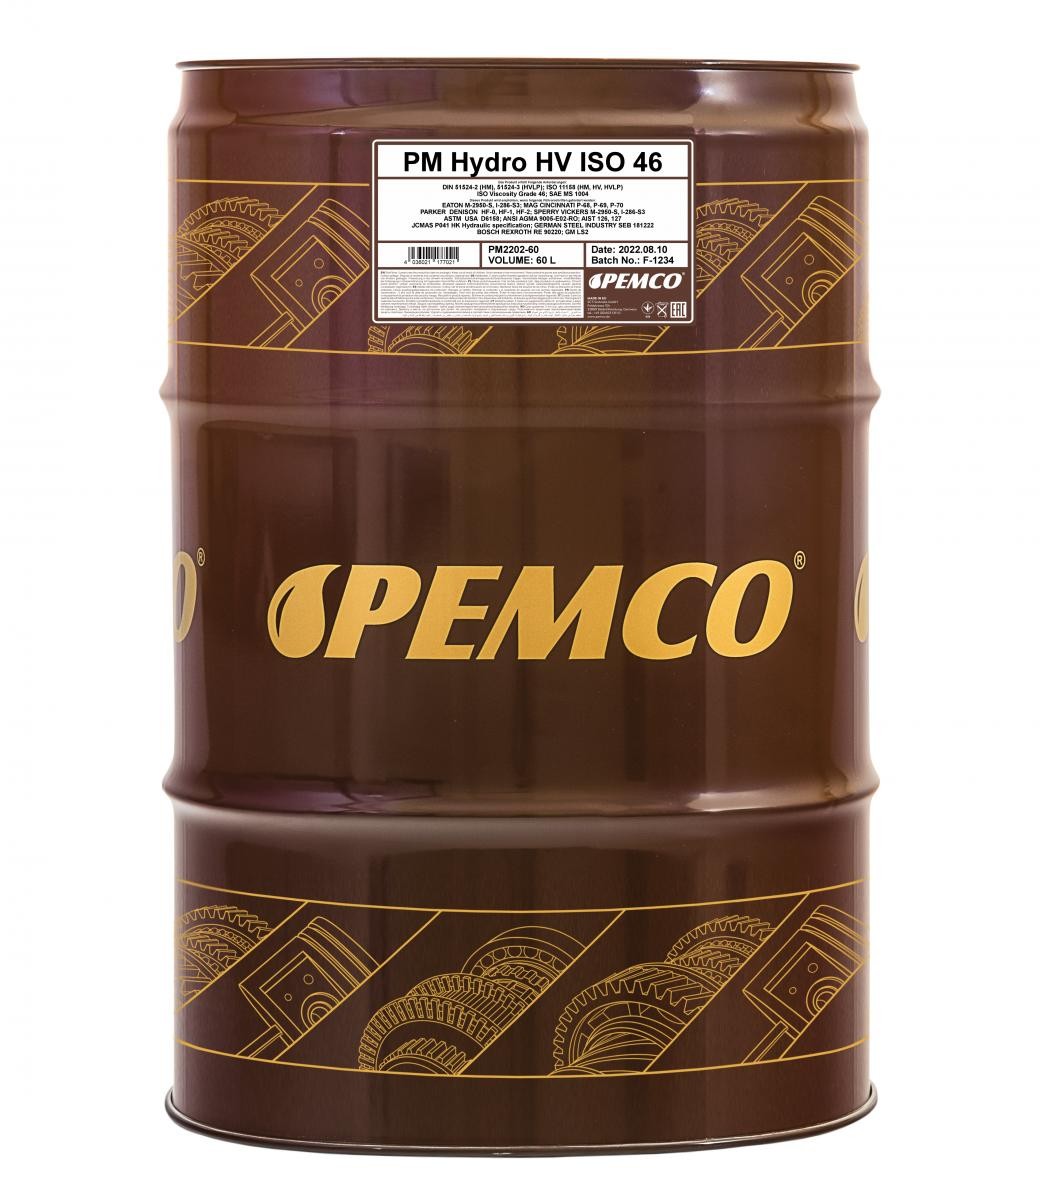 PM2202-60 PEMCO Hydrauliköl billiger online kaufen